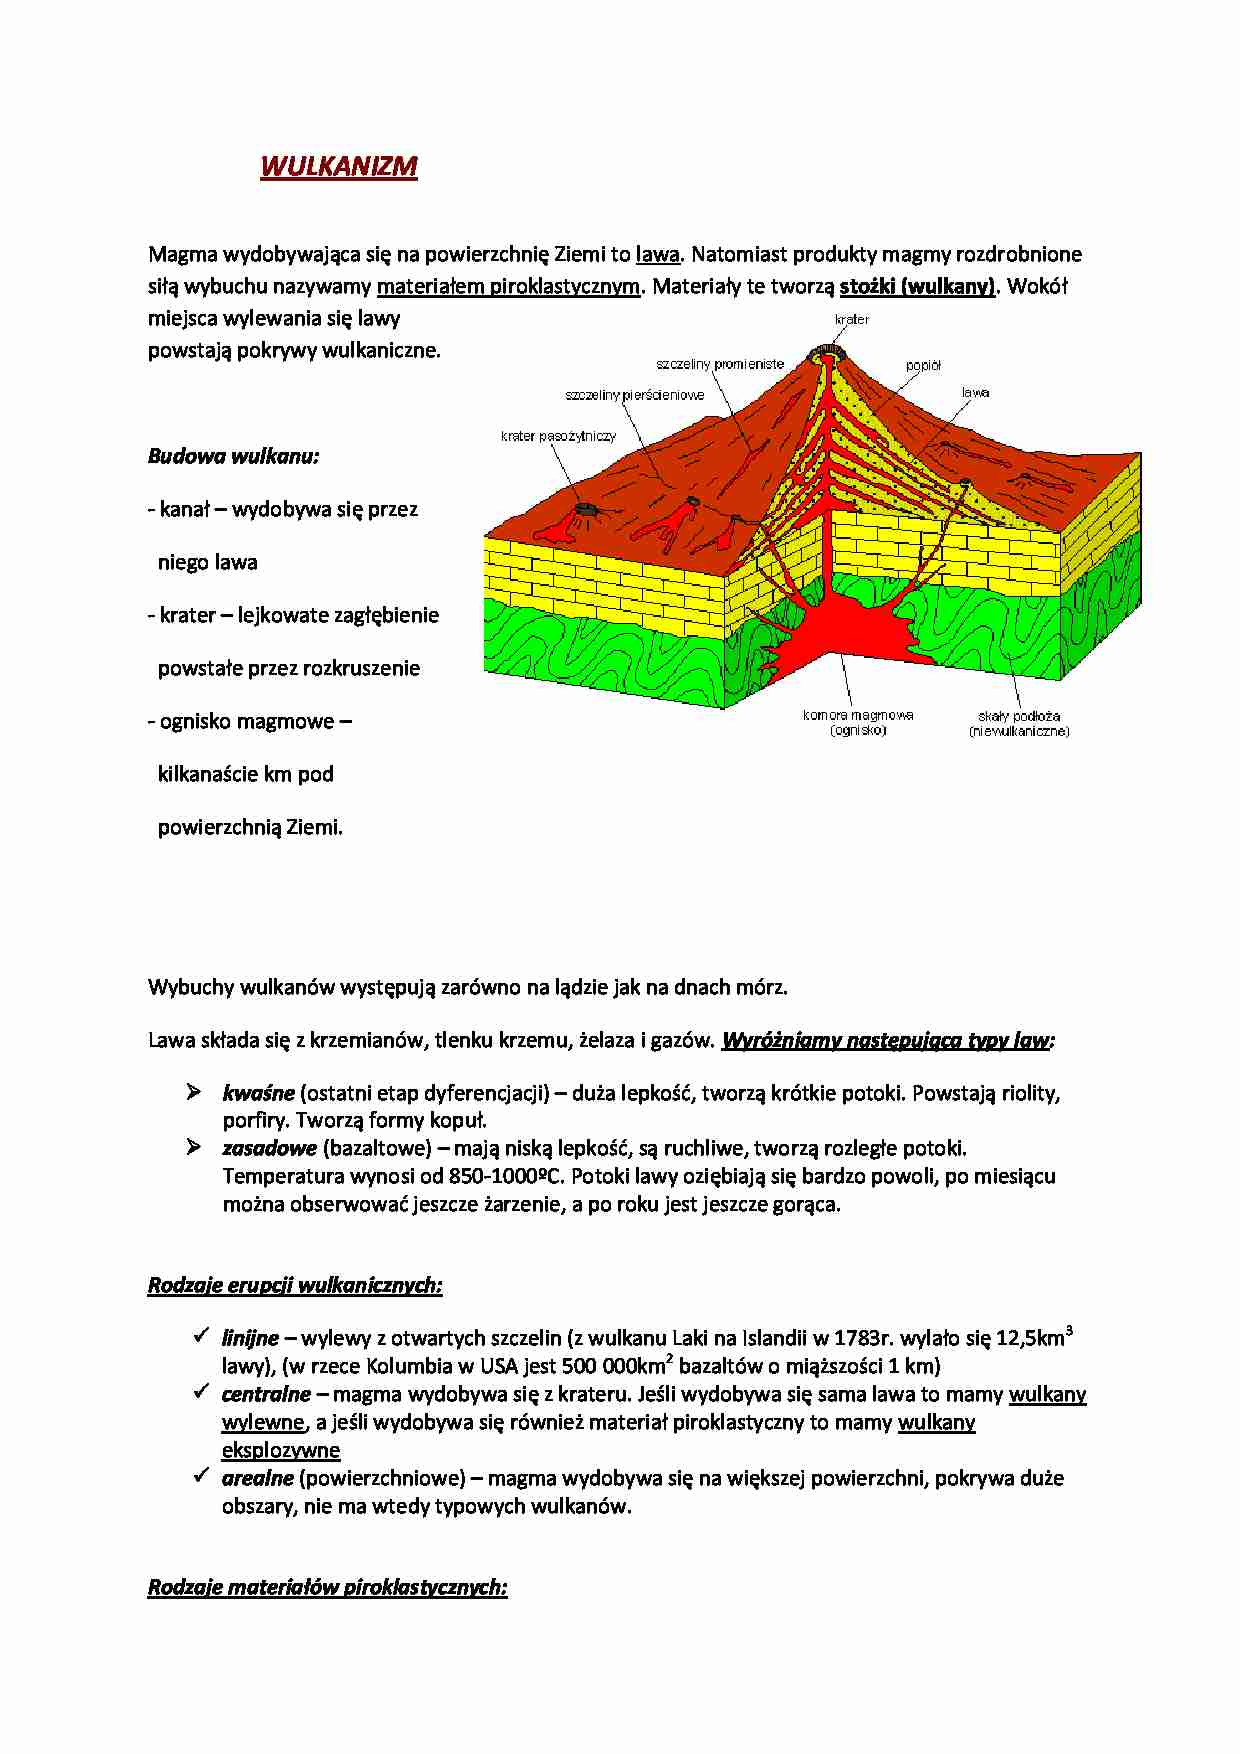 Wulkanizm - budowa i rodzaje  - strona 1